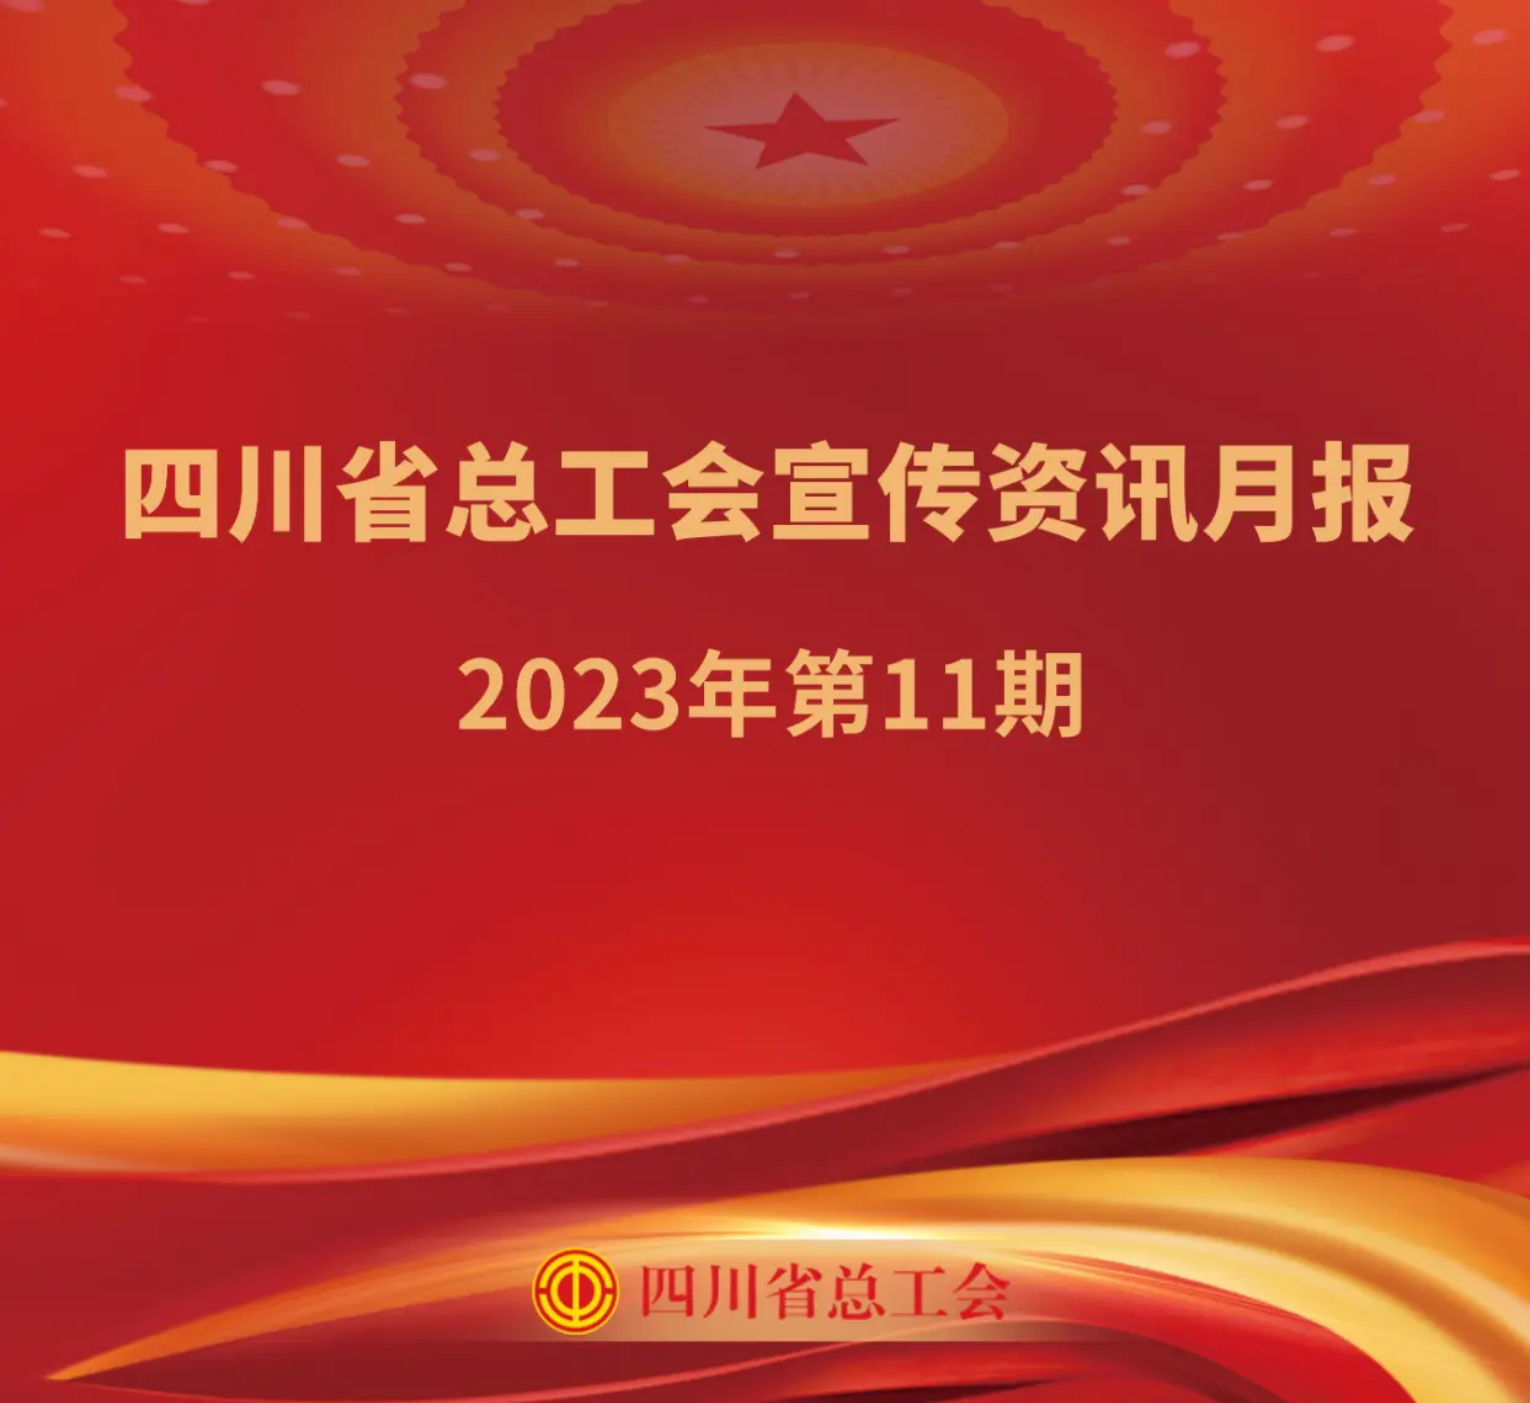 四川省总工会宣传资讯月报2023年第11期